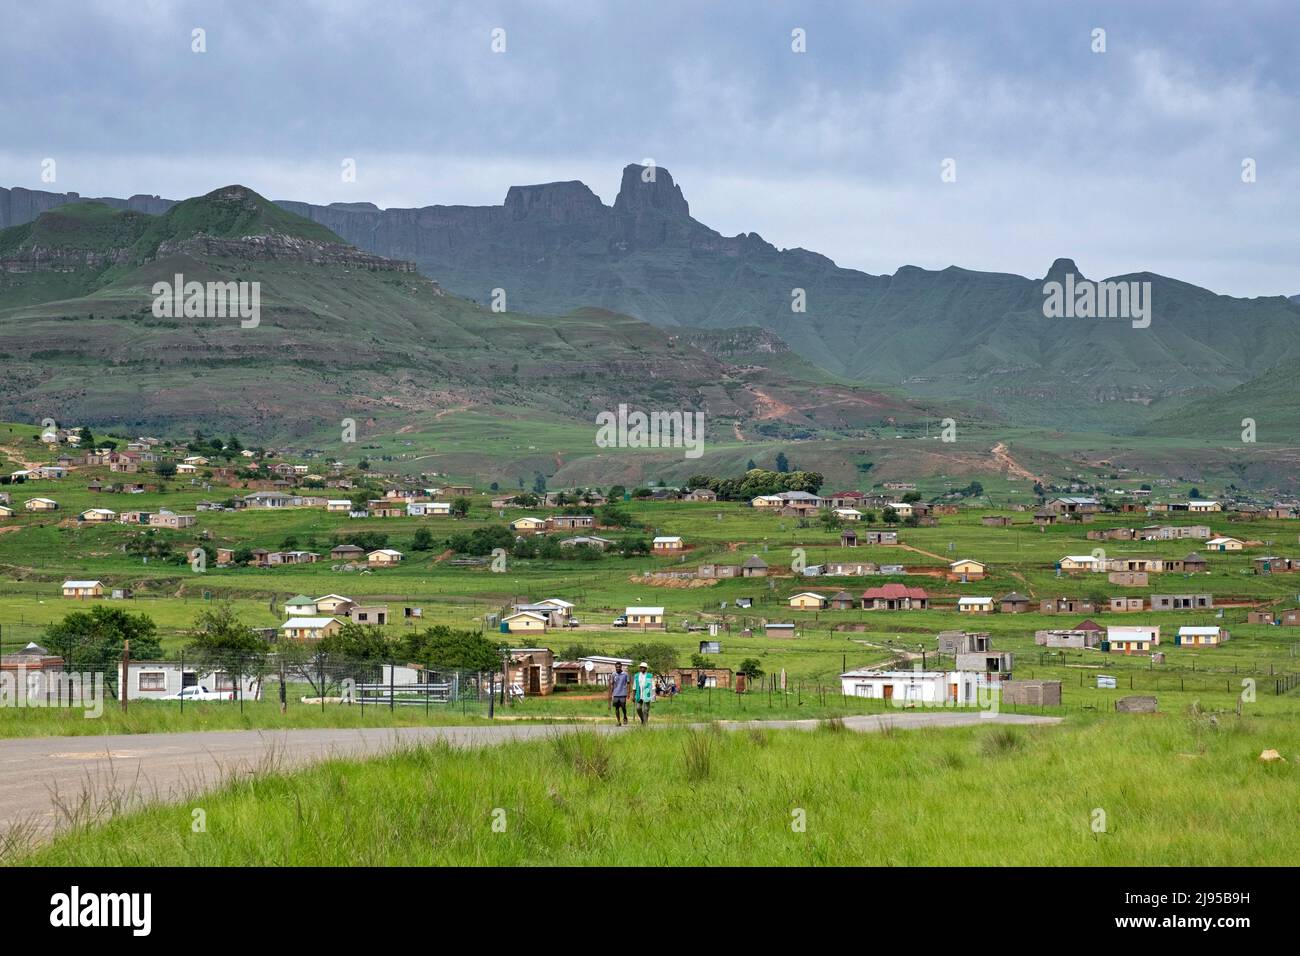 Drakensberg Mountain Range e insediamento rurale nella campagna di Mahai, frazione in KwaZulu-Natal, Sudafrica Foto Stock